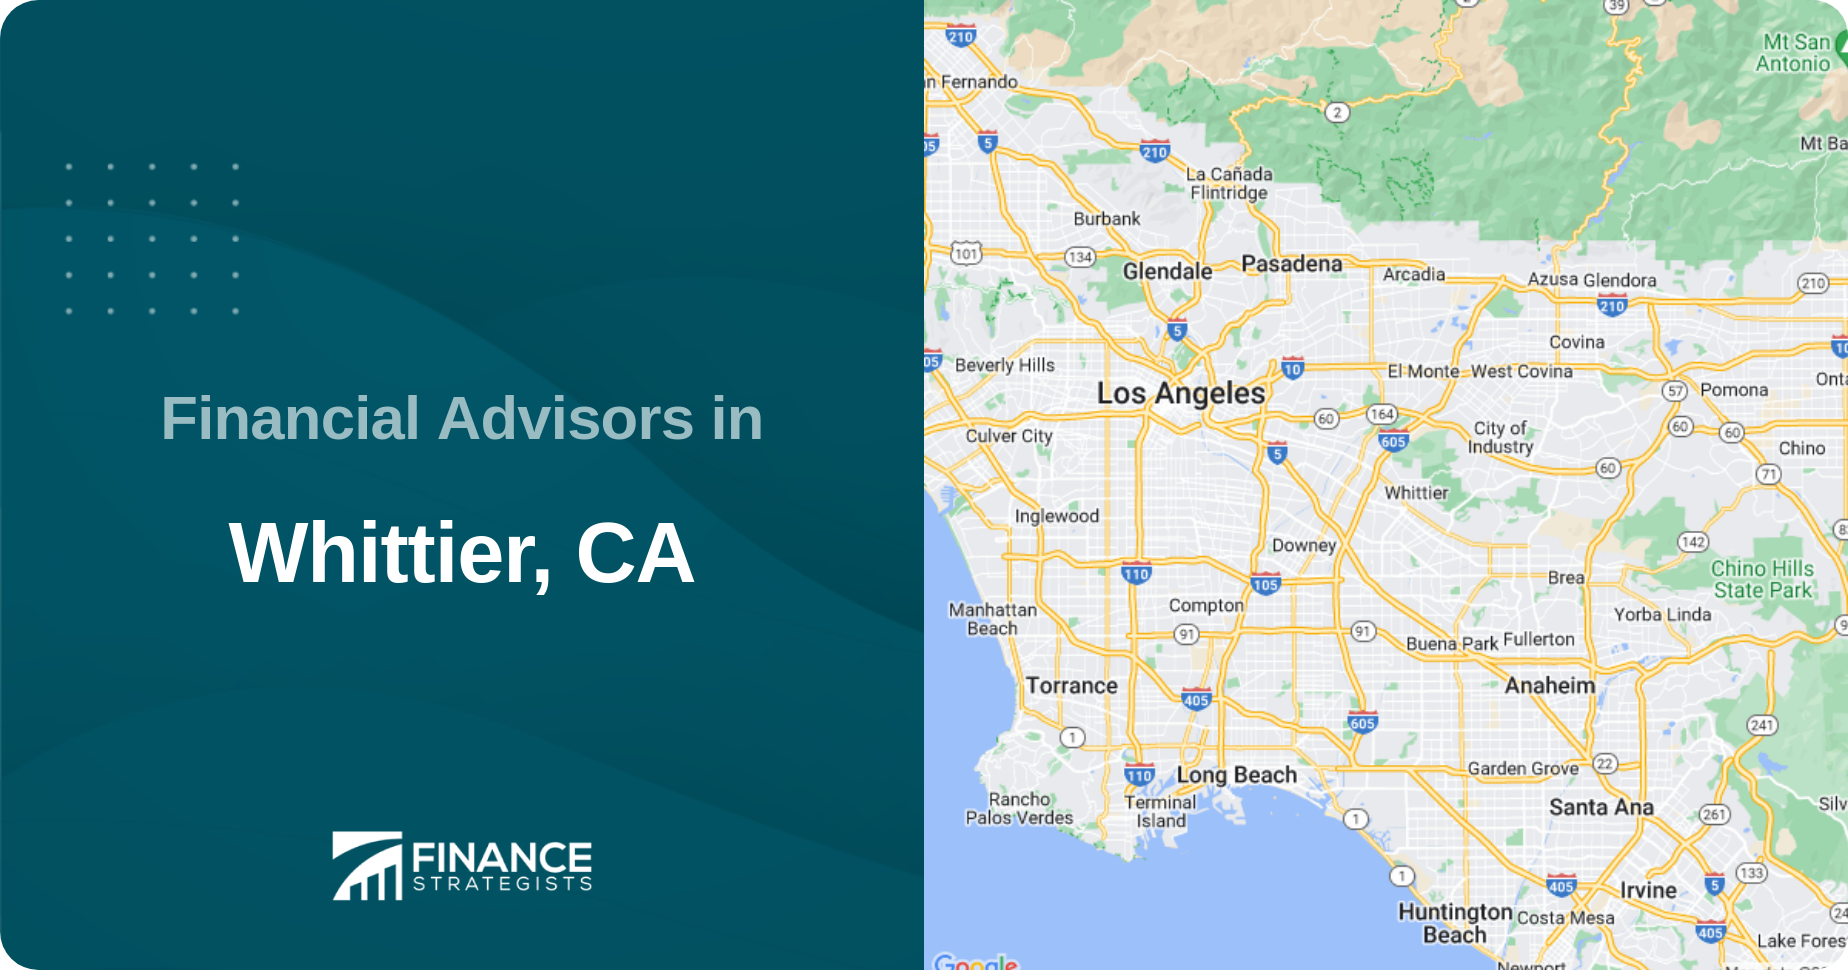 Financial Advisors in Whittier, CA